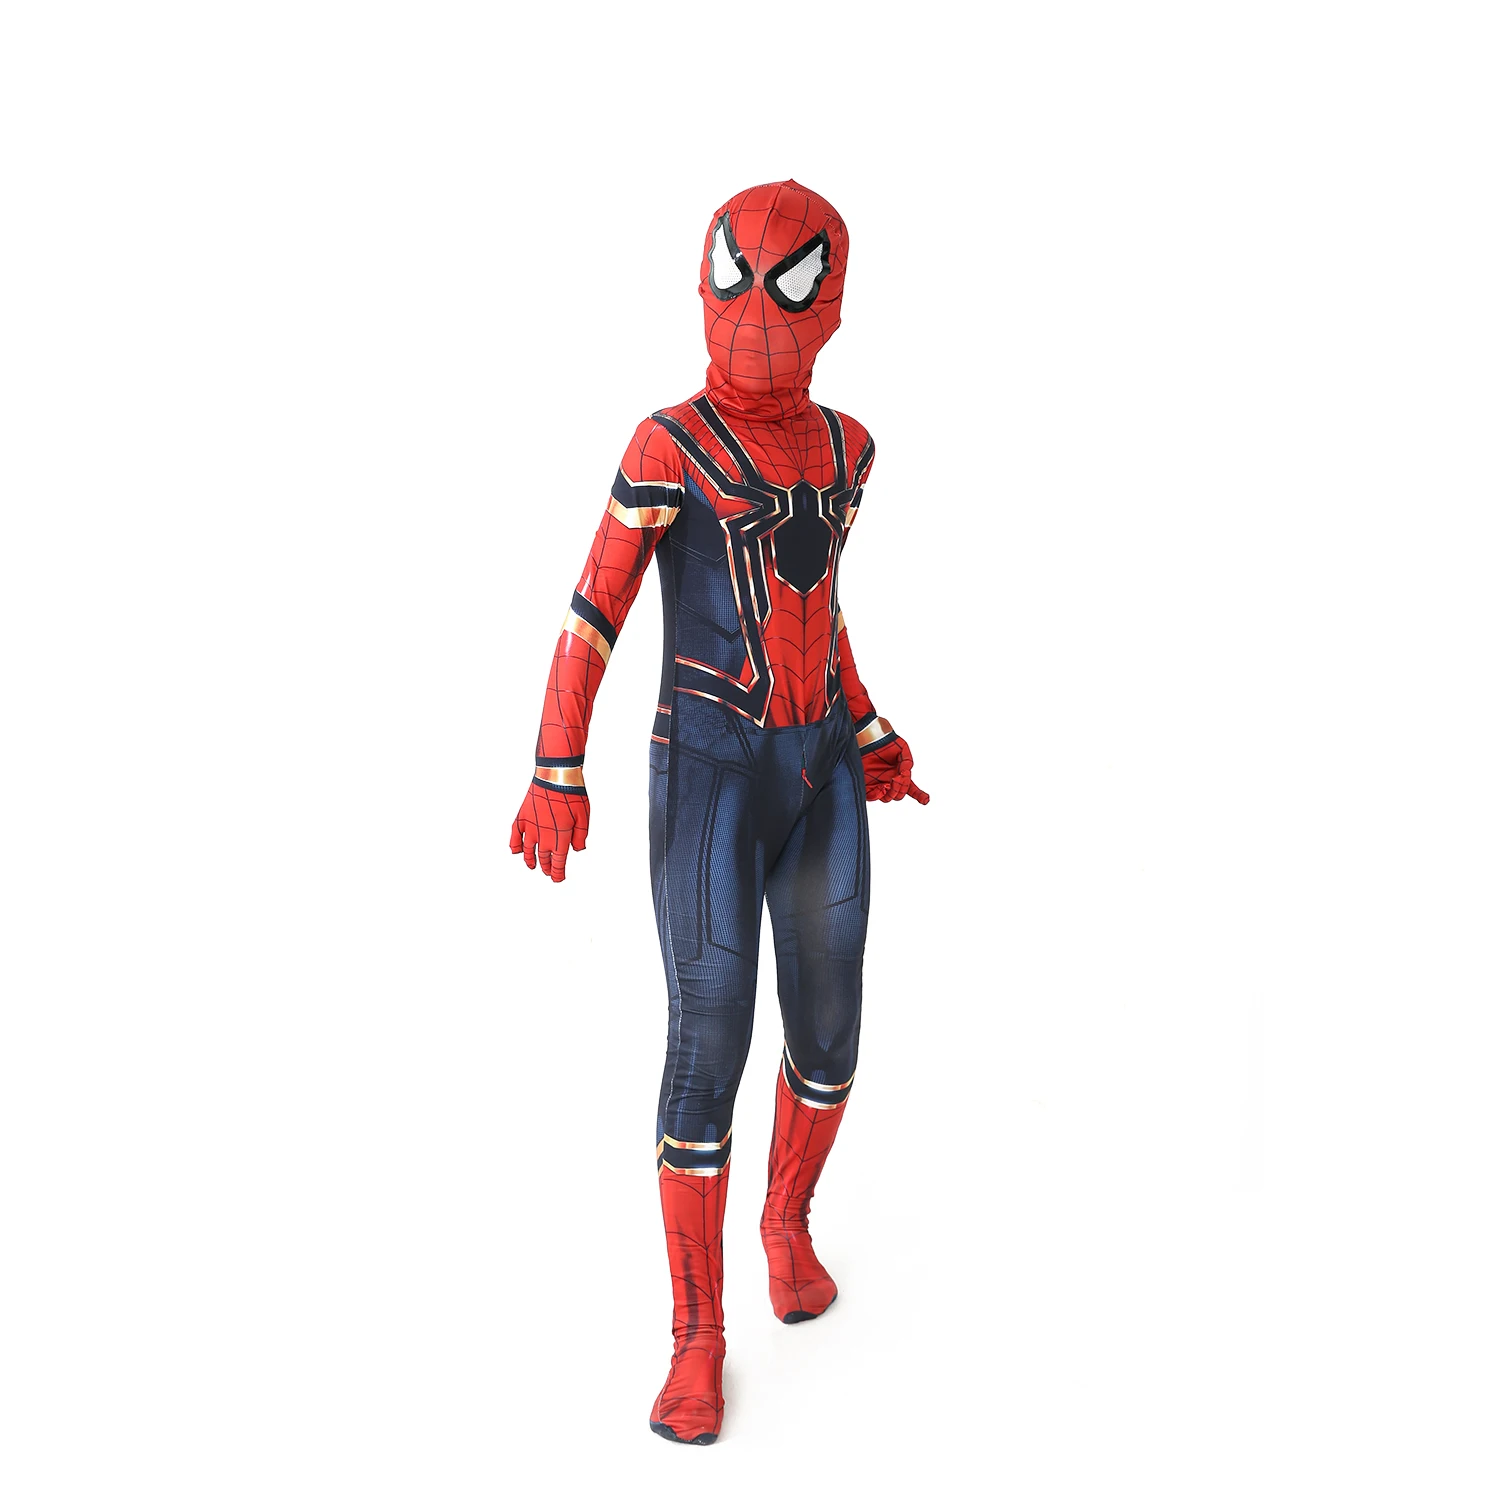 New Miles Morales lontano da casa Costume Cosplay Zentai Spiderman Costume supereroe body Spandex vestito per bambini su misura